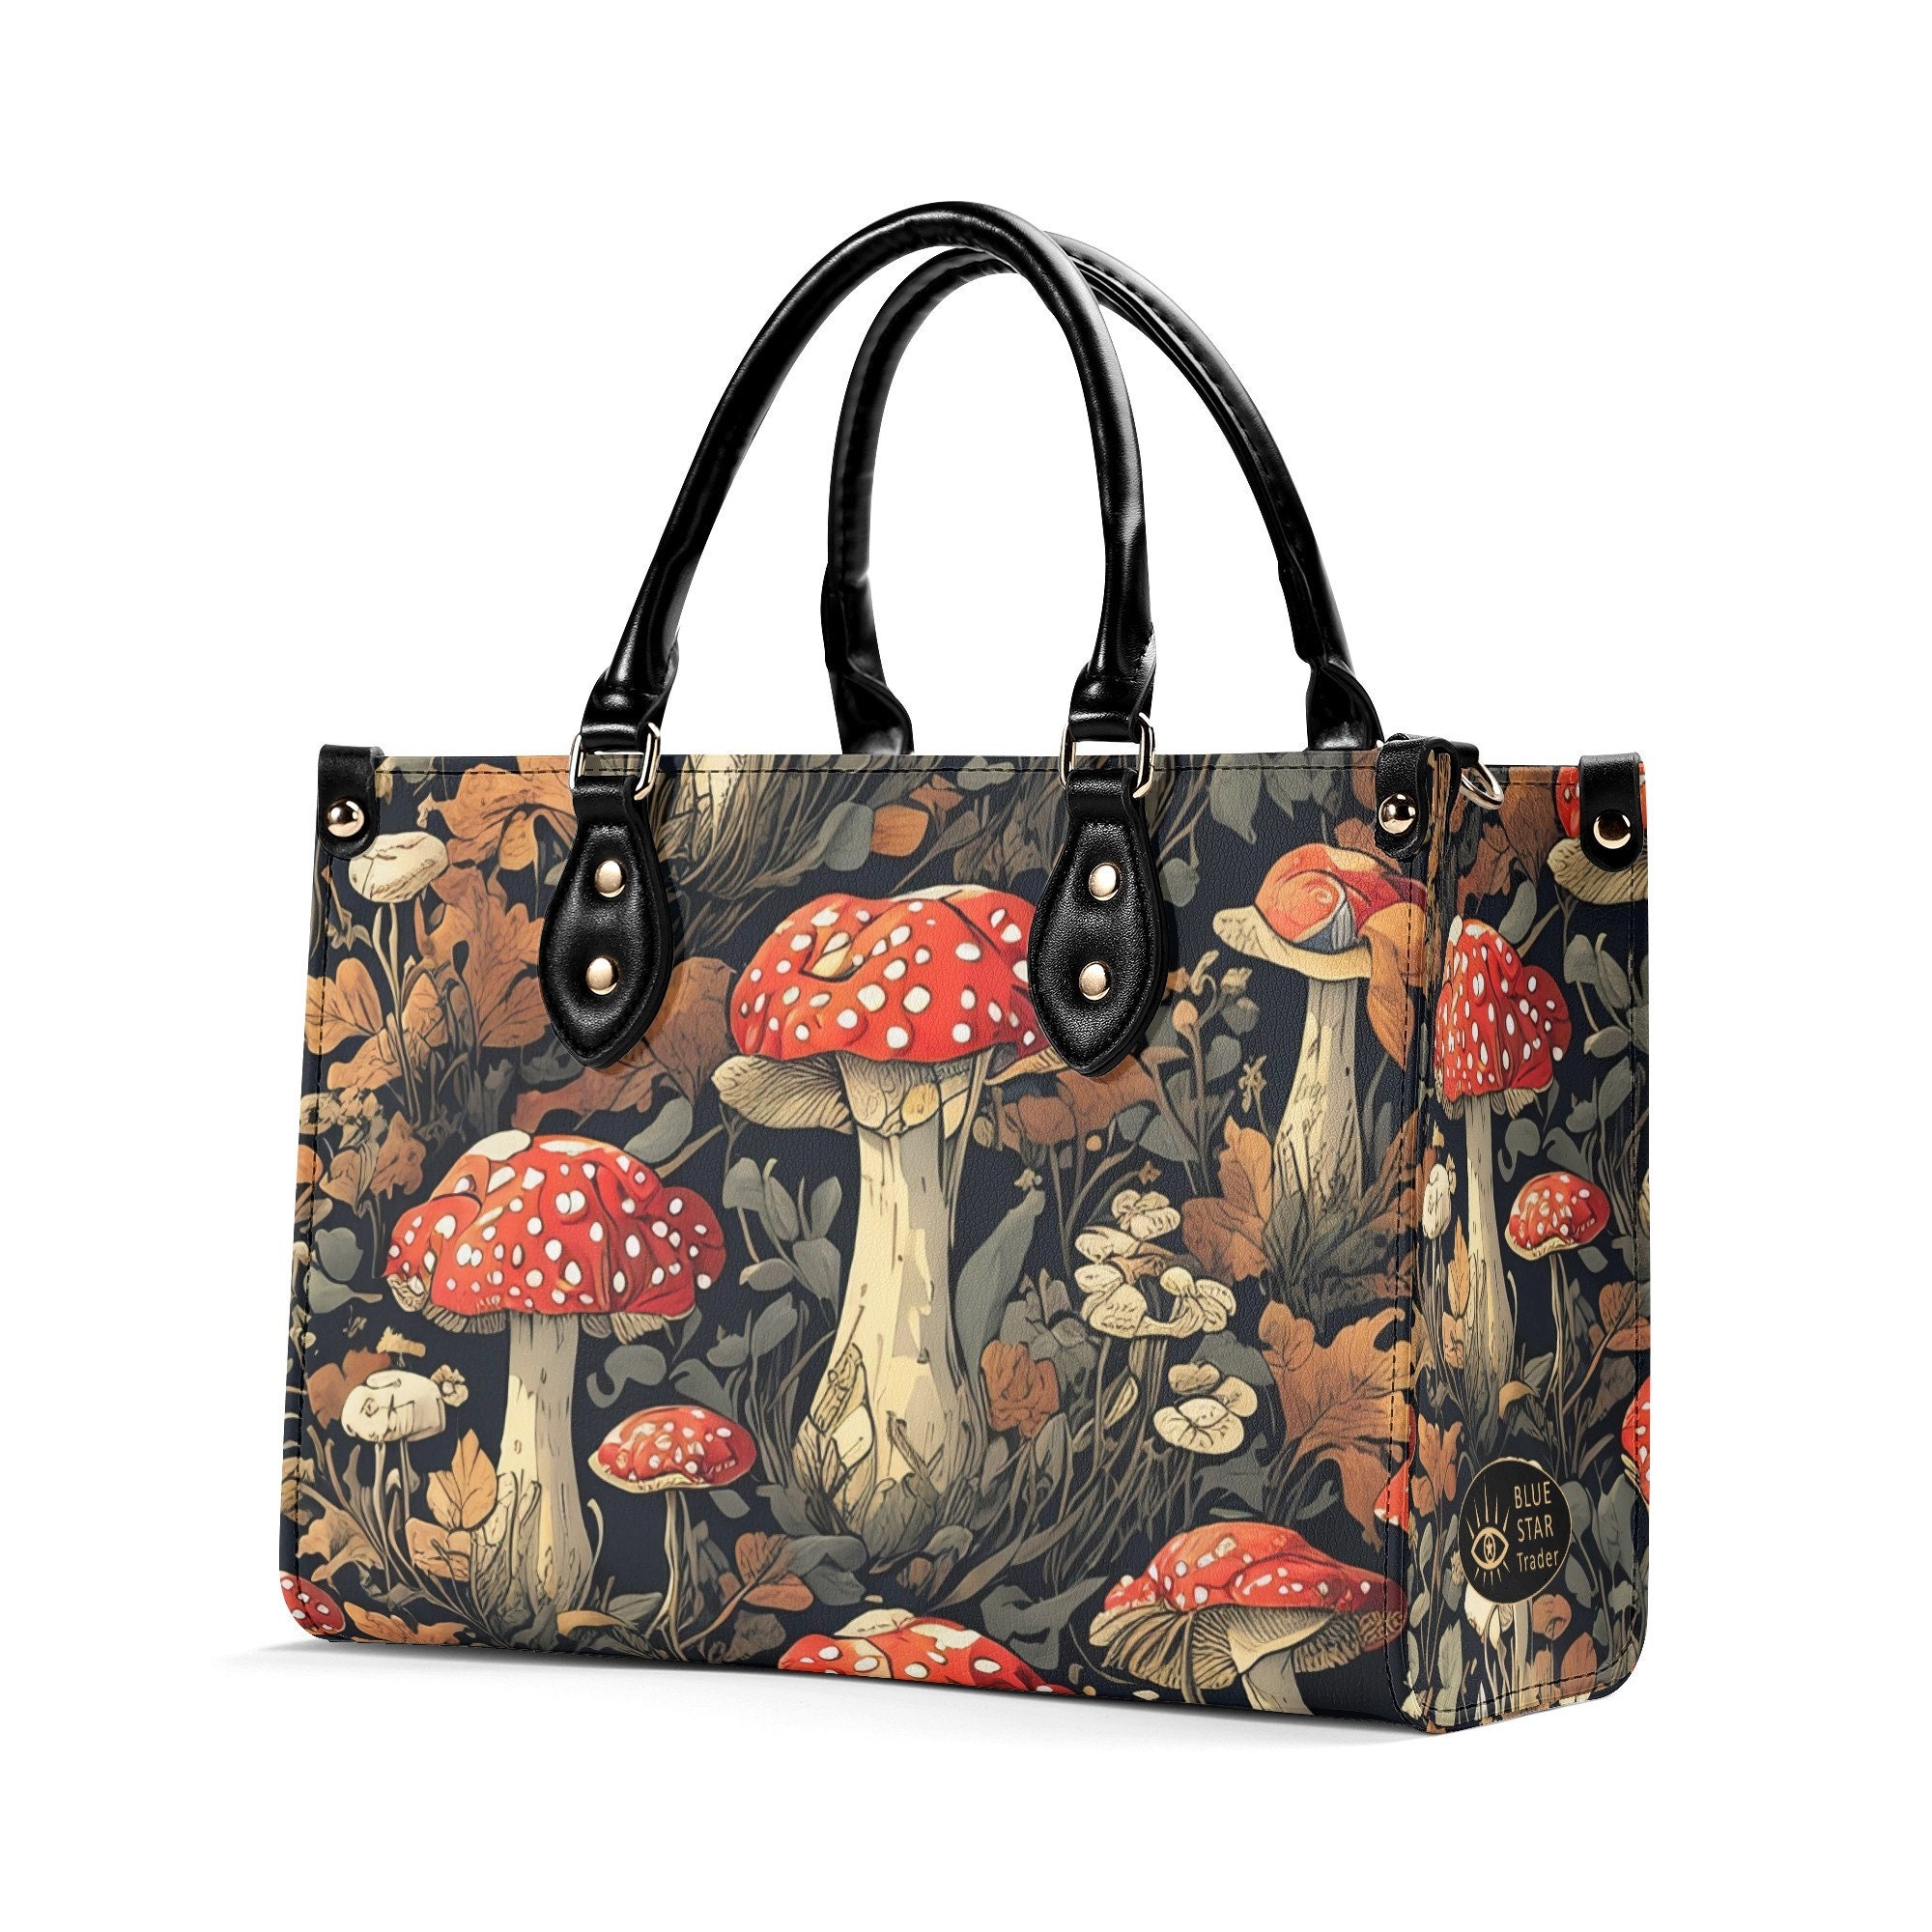 Amanita Red Mushrooms Vegan Leather Purse, Cute women Hand Bag Shoulder Bag